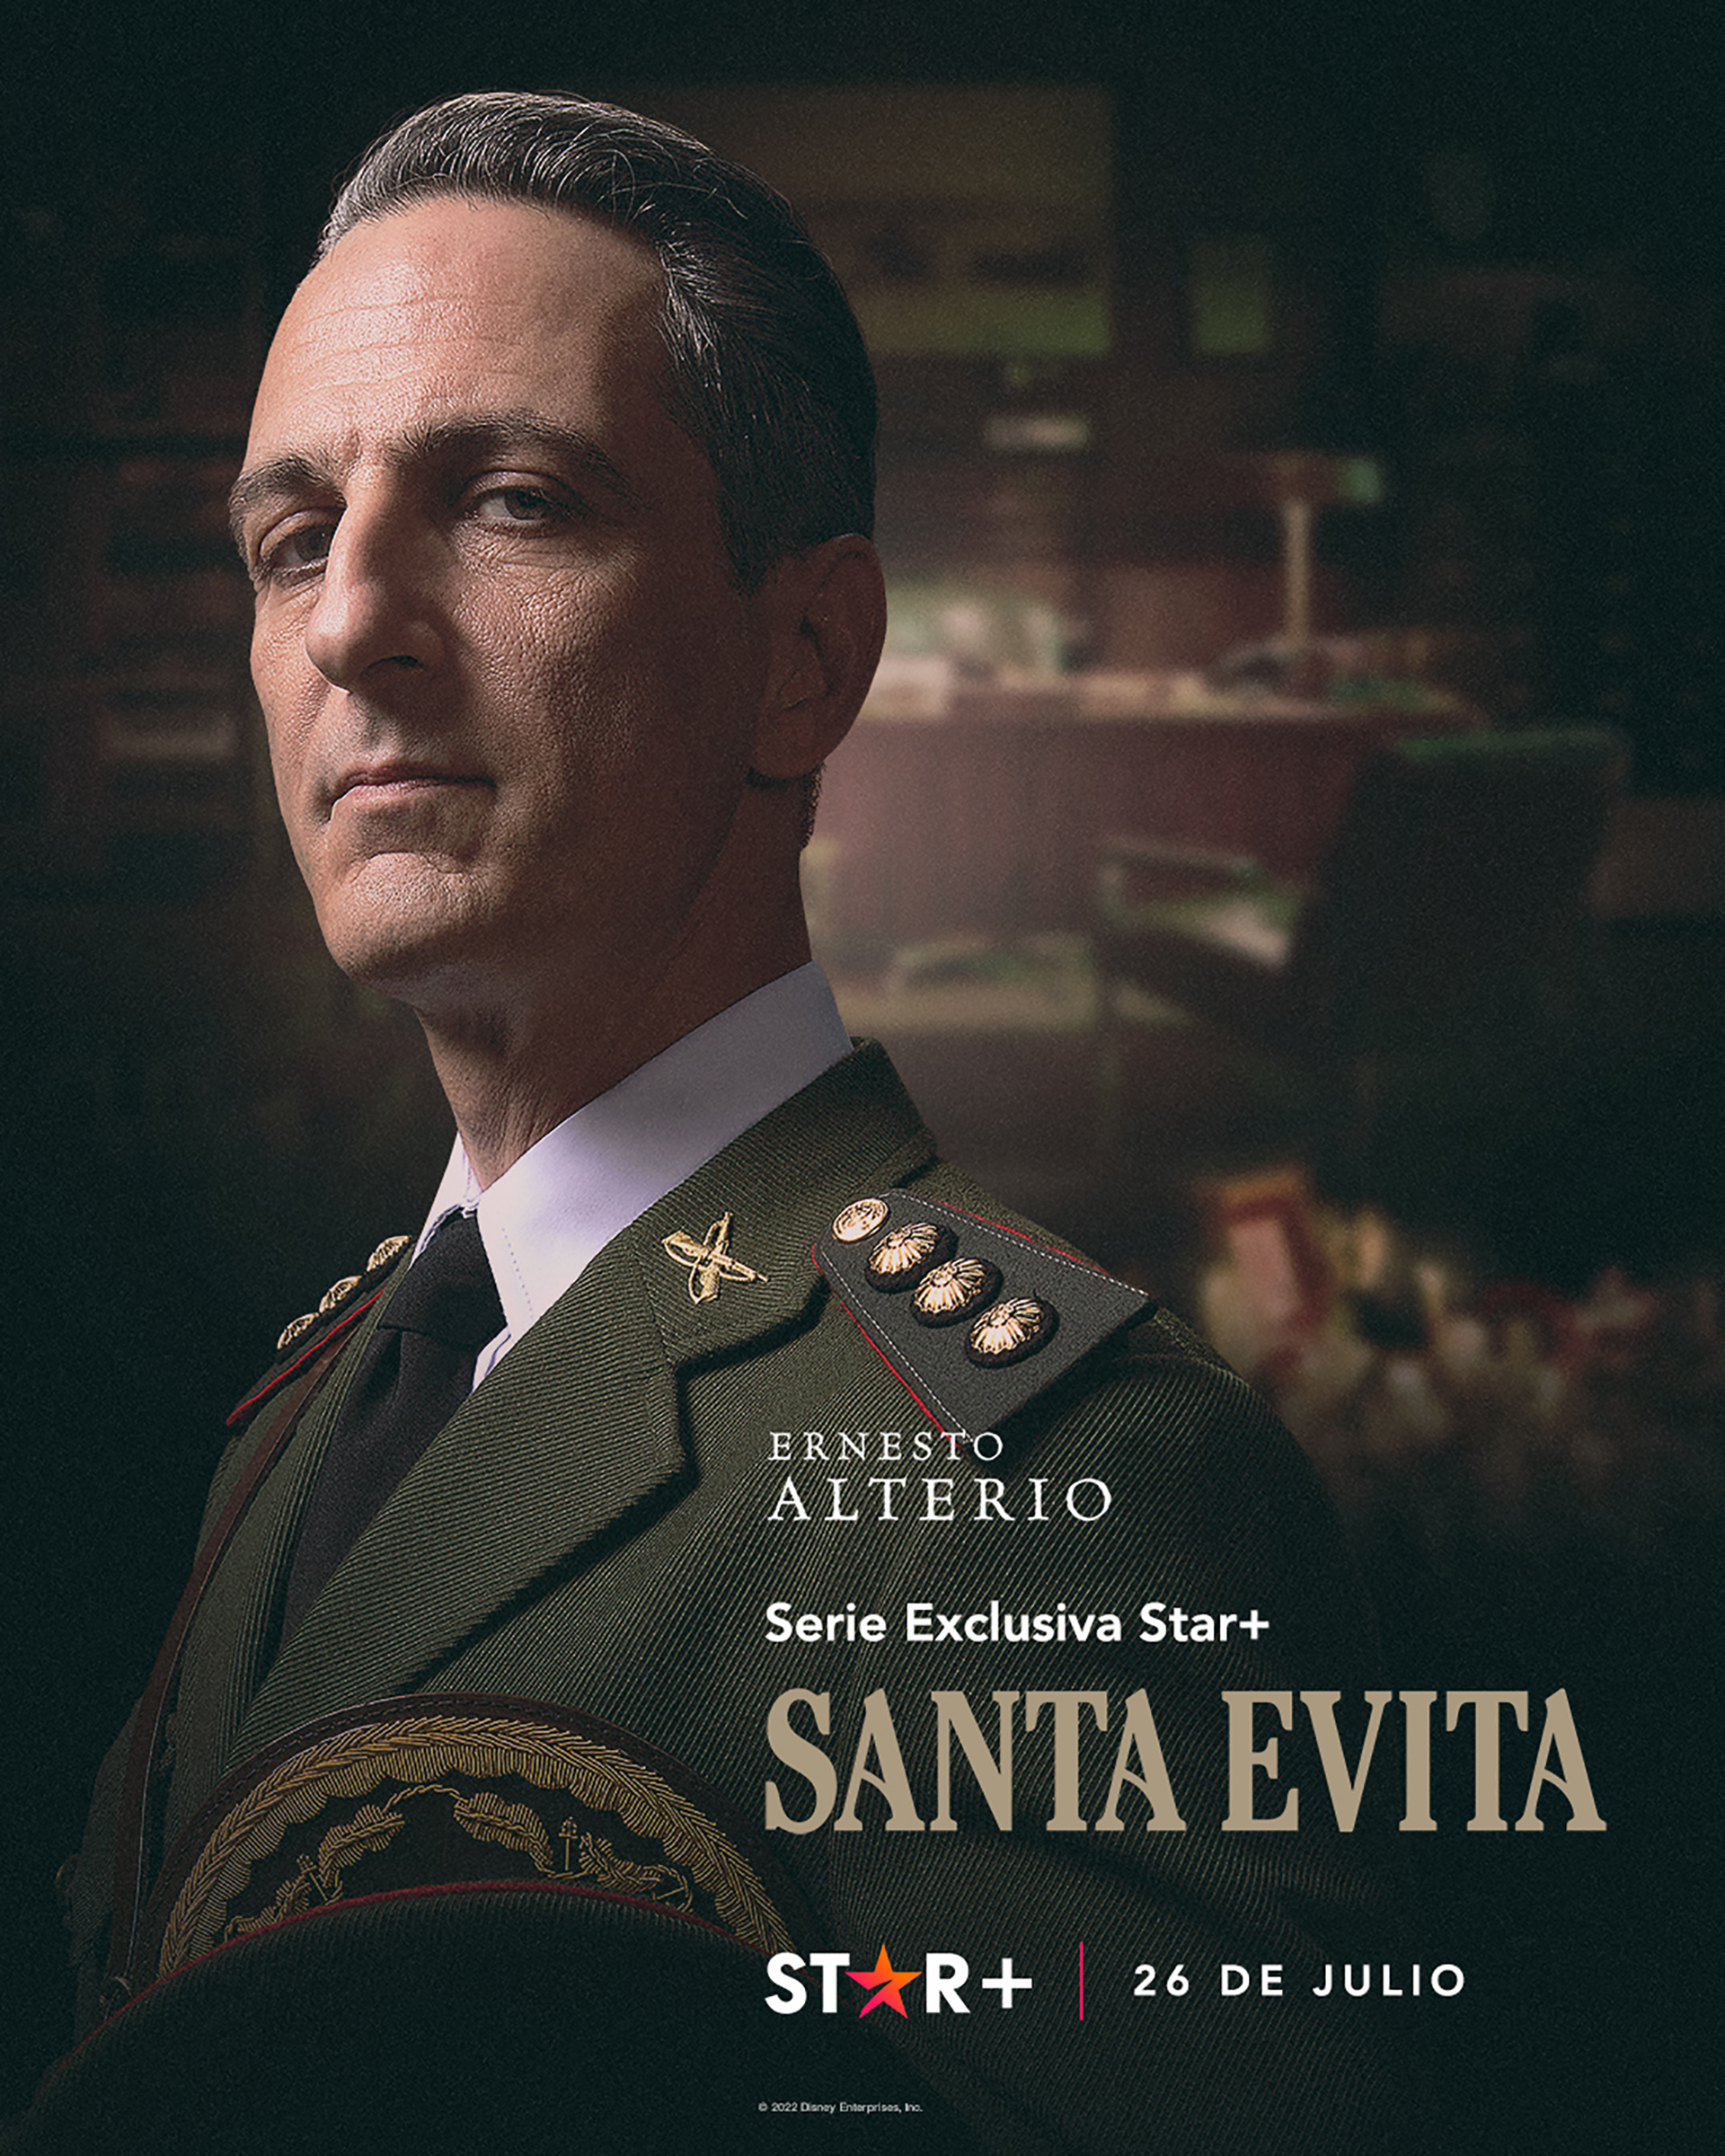 Ernesto Alterio se suma a "Santa Evita" que llega a la plataforma el 26 de julio. (Star Plus)